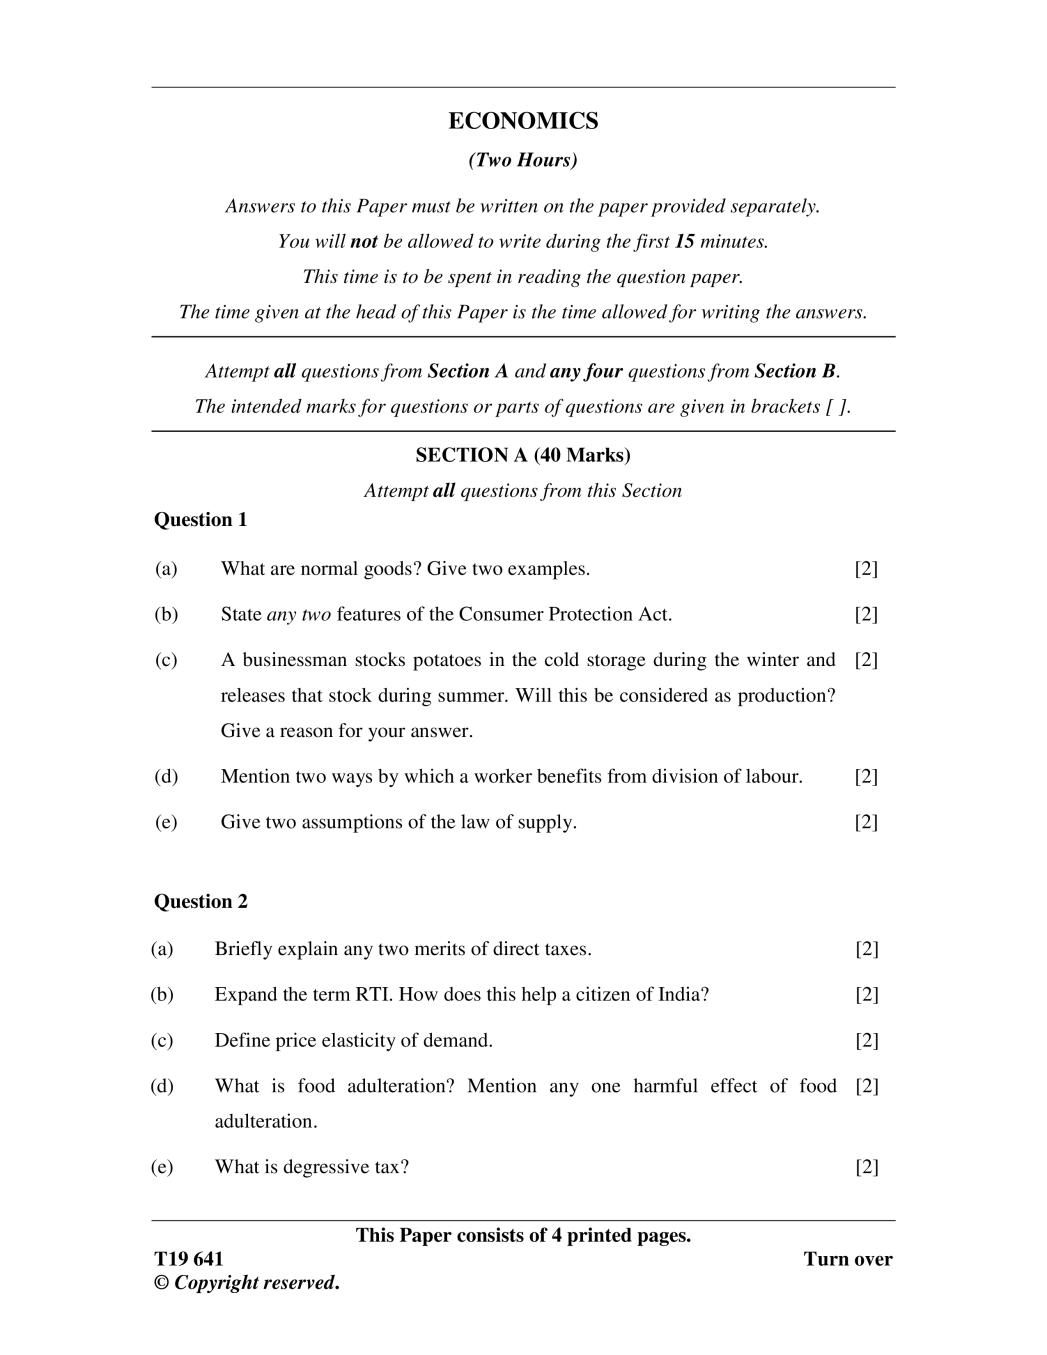 ICSE Class 10 Question Paper 2019 for Economics  - Page 1